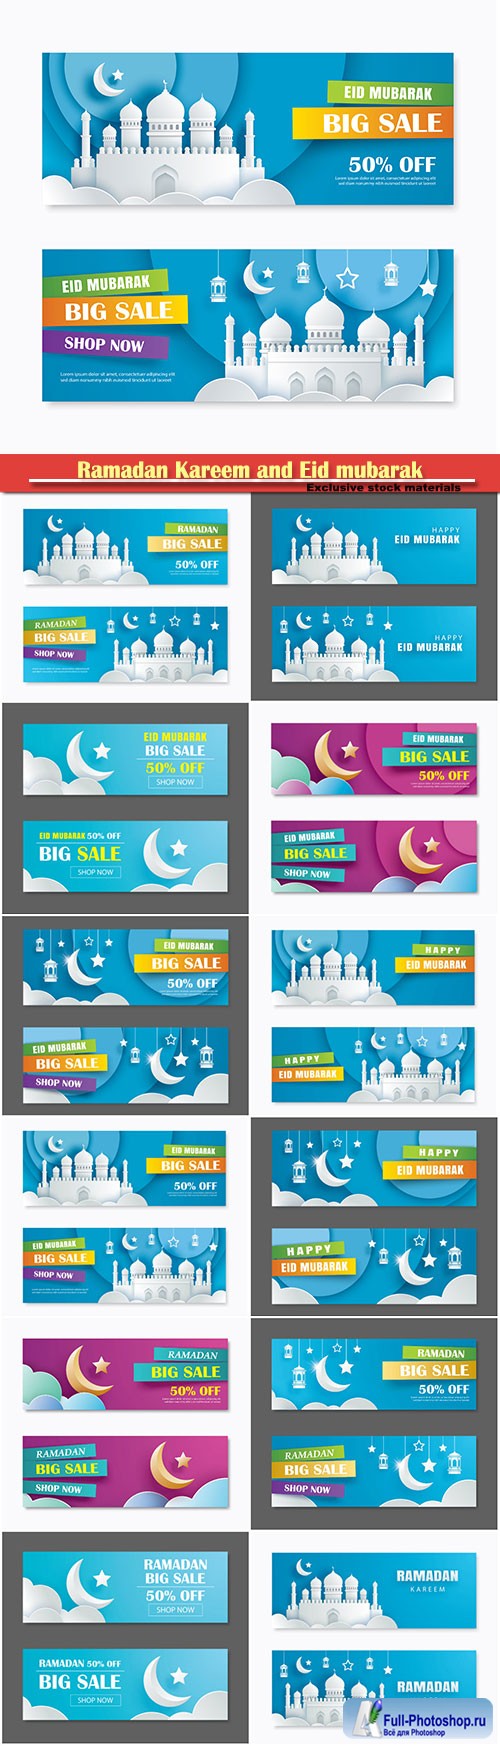 Ramadan Kareem and Eid mubarak sale vector banner design